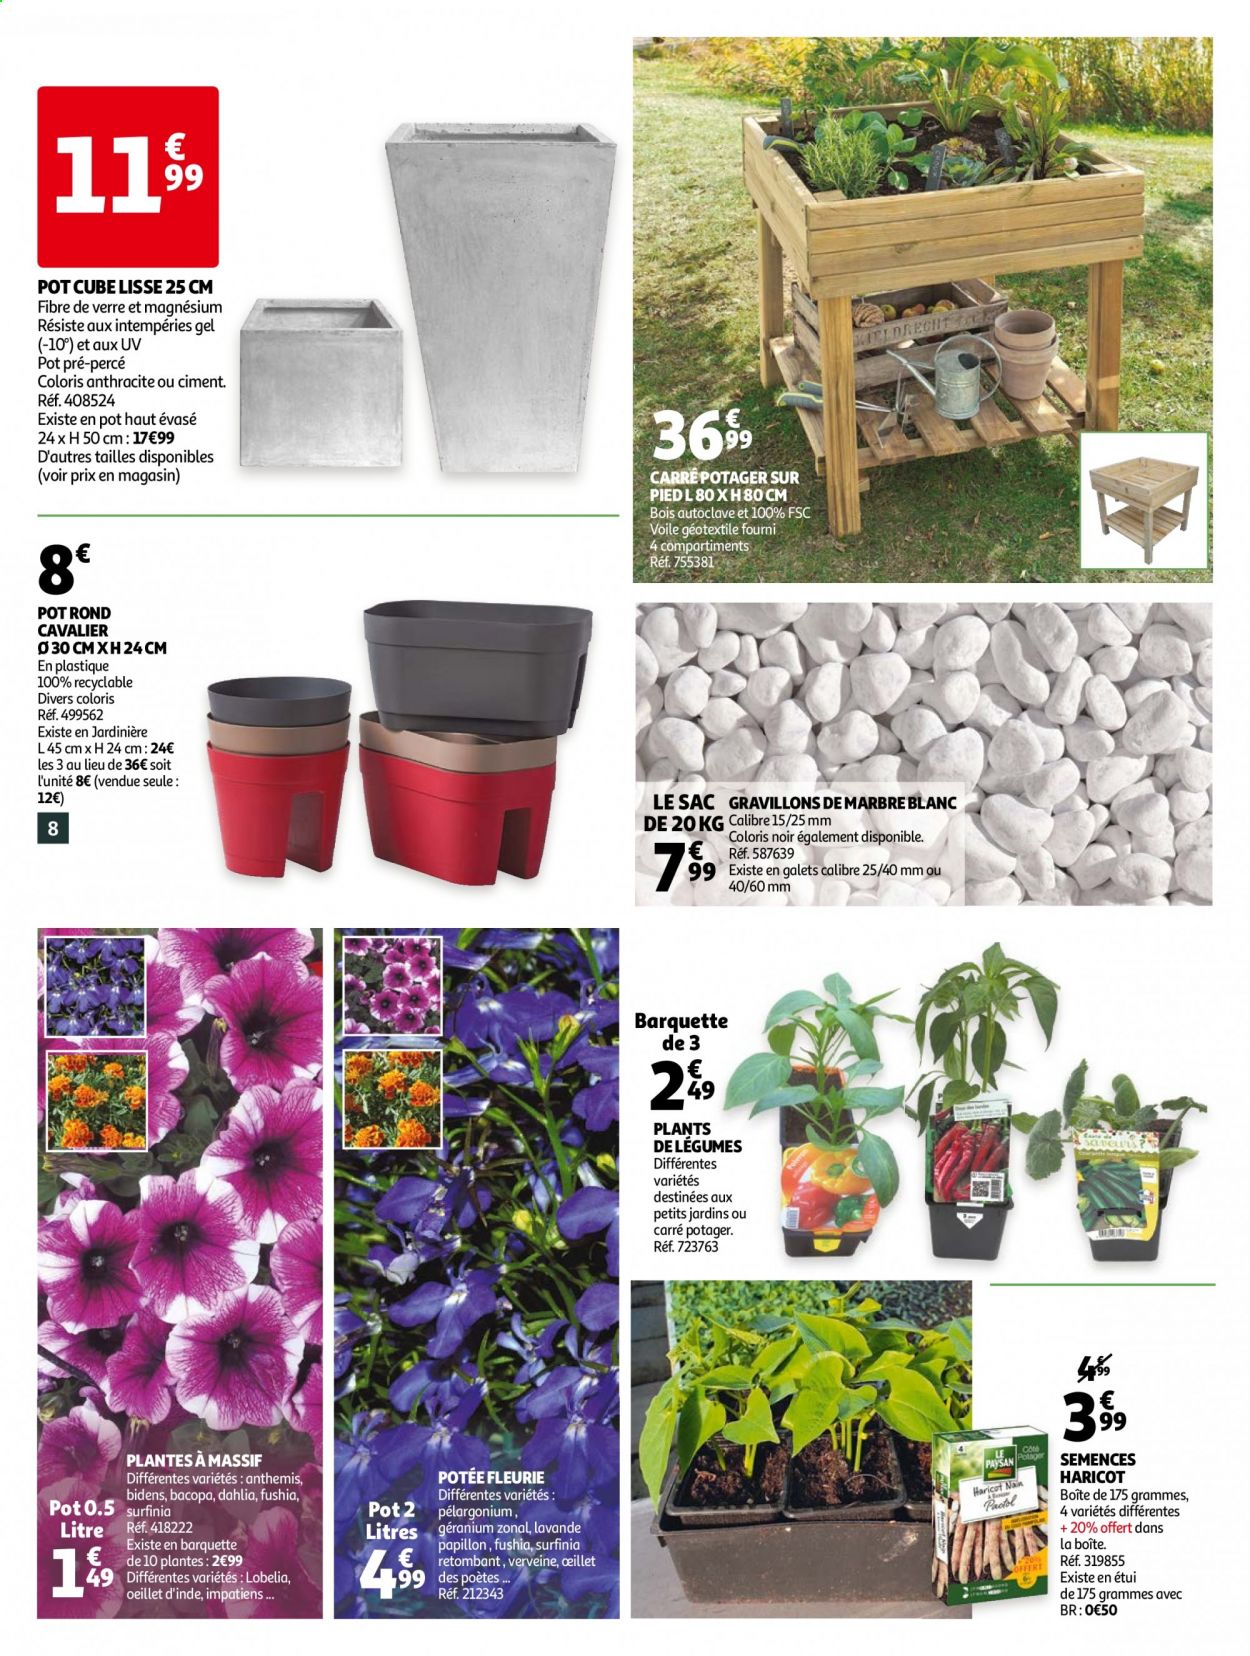 thumbnail - Catalogue Auchan - 14/04/2021 - 25/04/2021 - Produits soldés - haricots, sac à main, plantes vivaces, lavande, jardinière, carré potager, pot rond, Magne B6. Page 8.